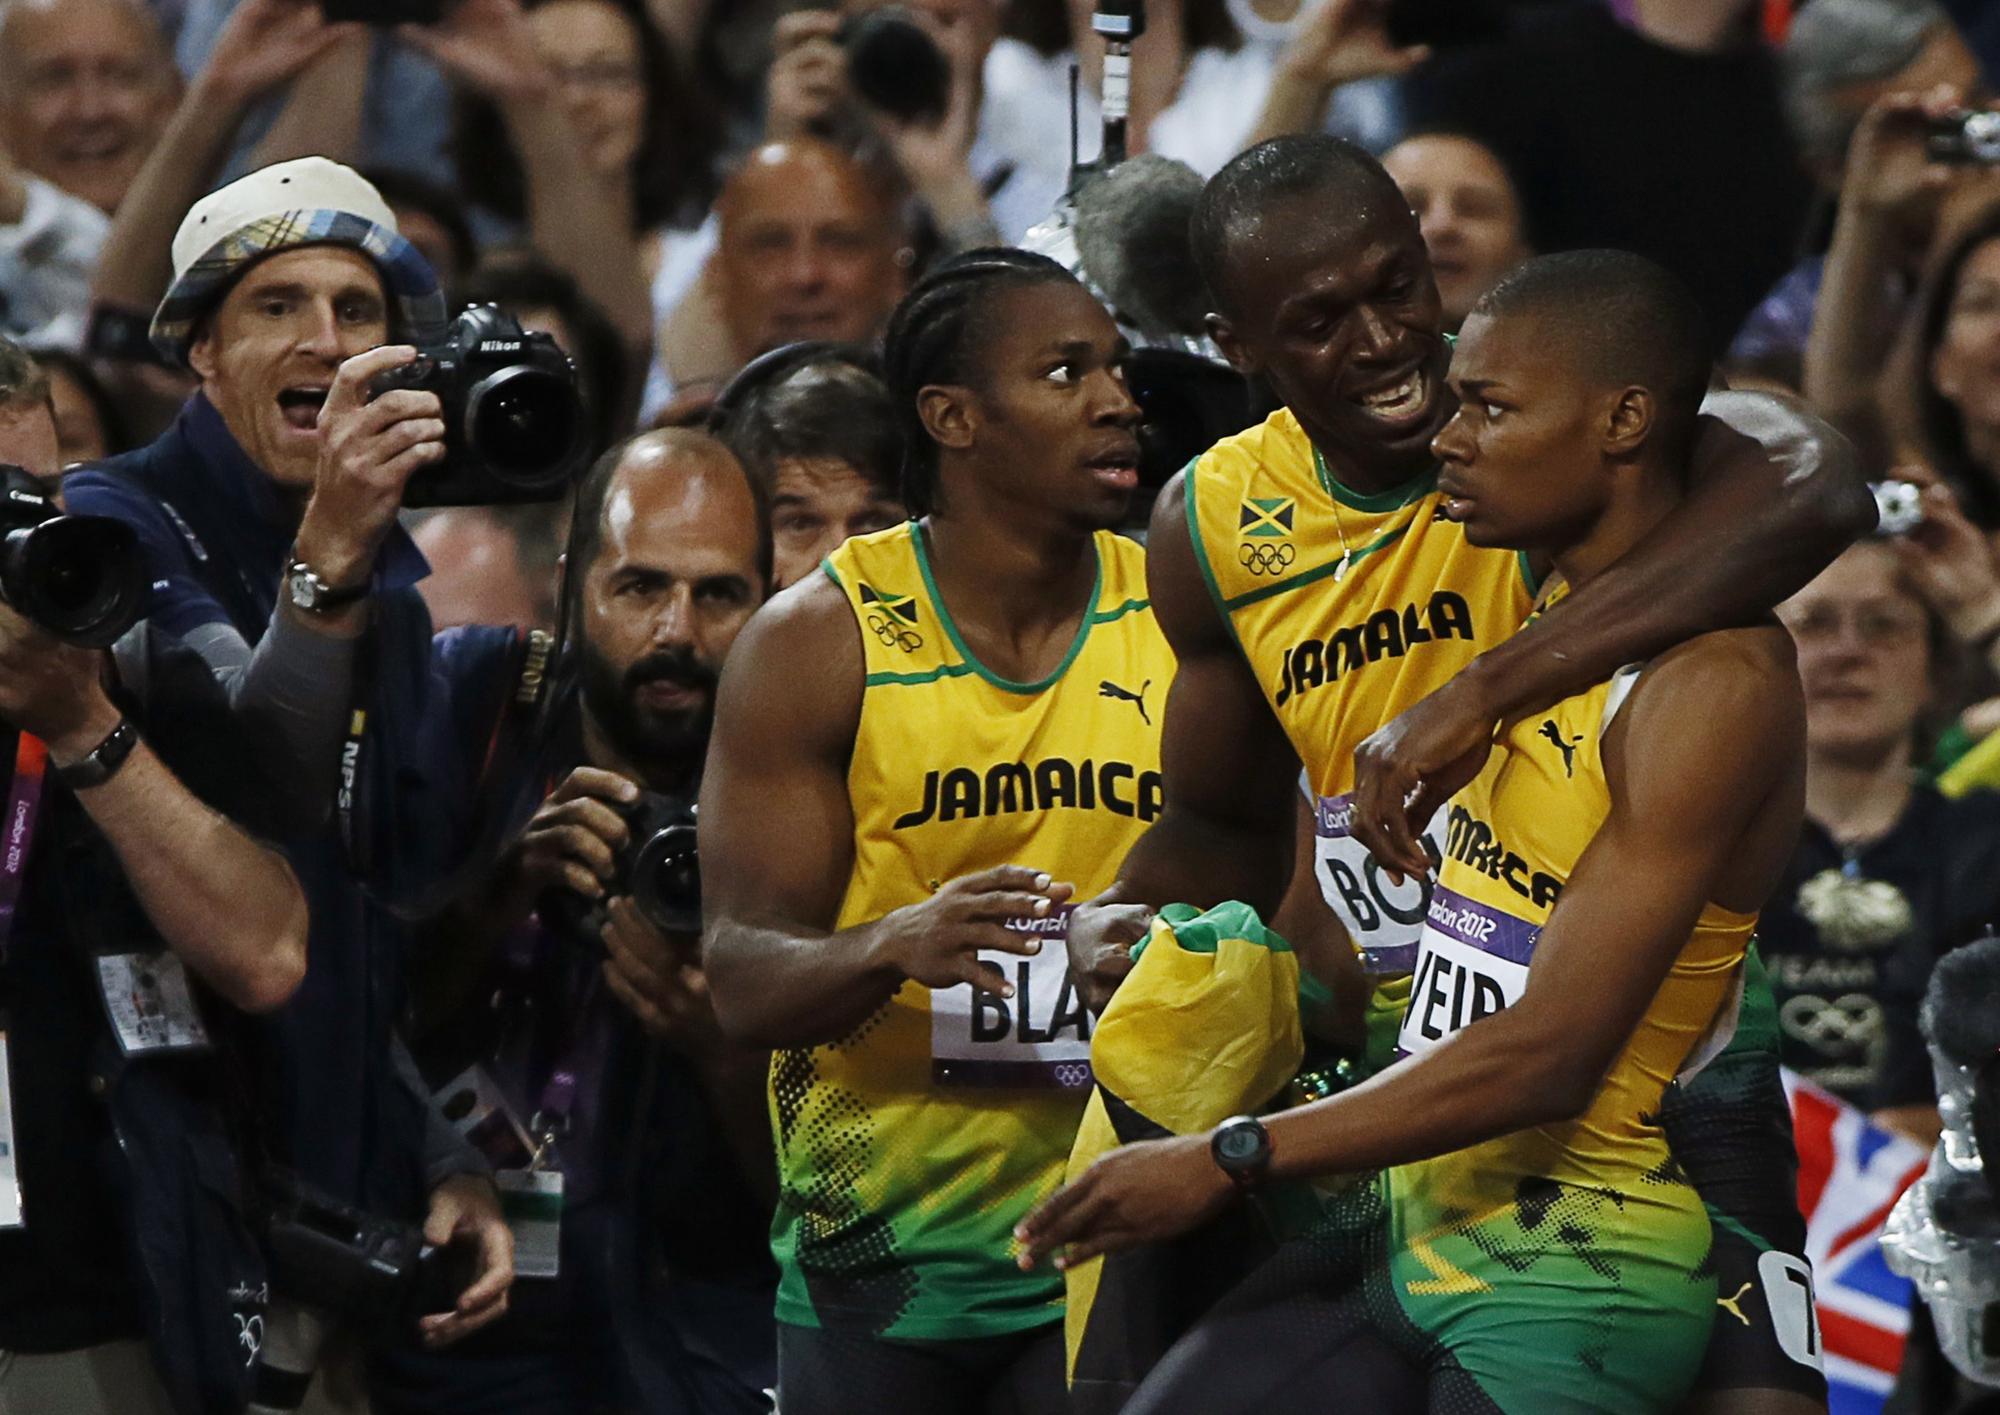 La Jamaïque est tout simplement intouchable sur les disciplines de sprint lors de ces JO. [REUTERS - Lucy Nicholson]